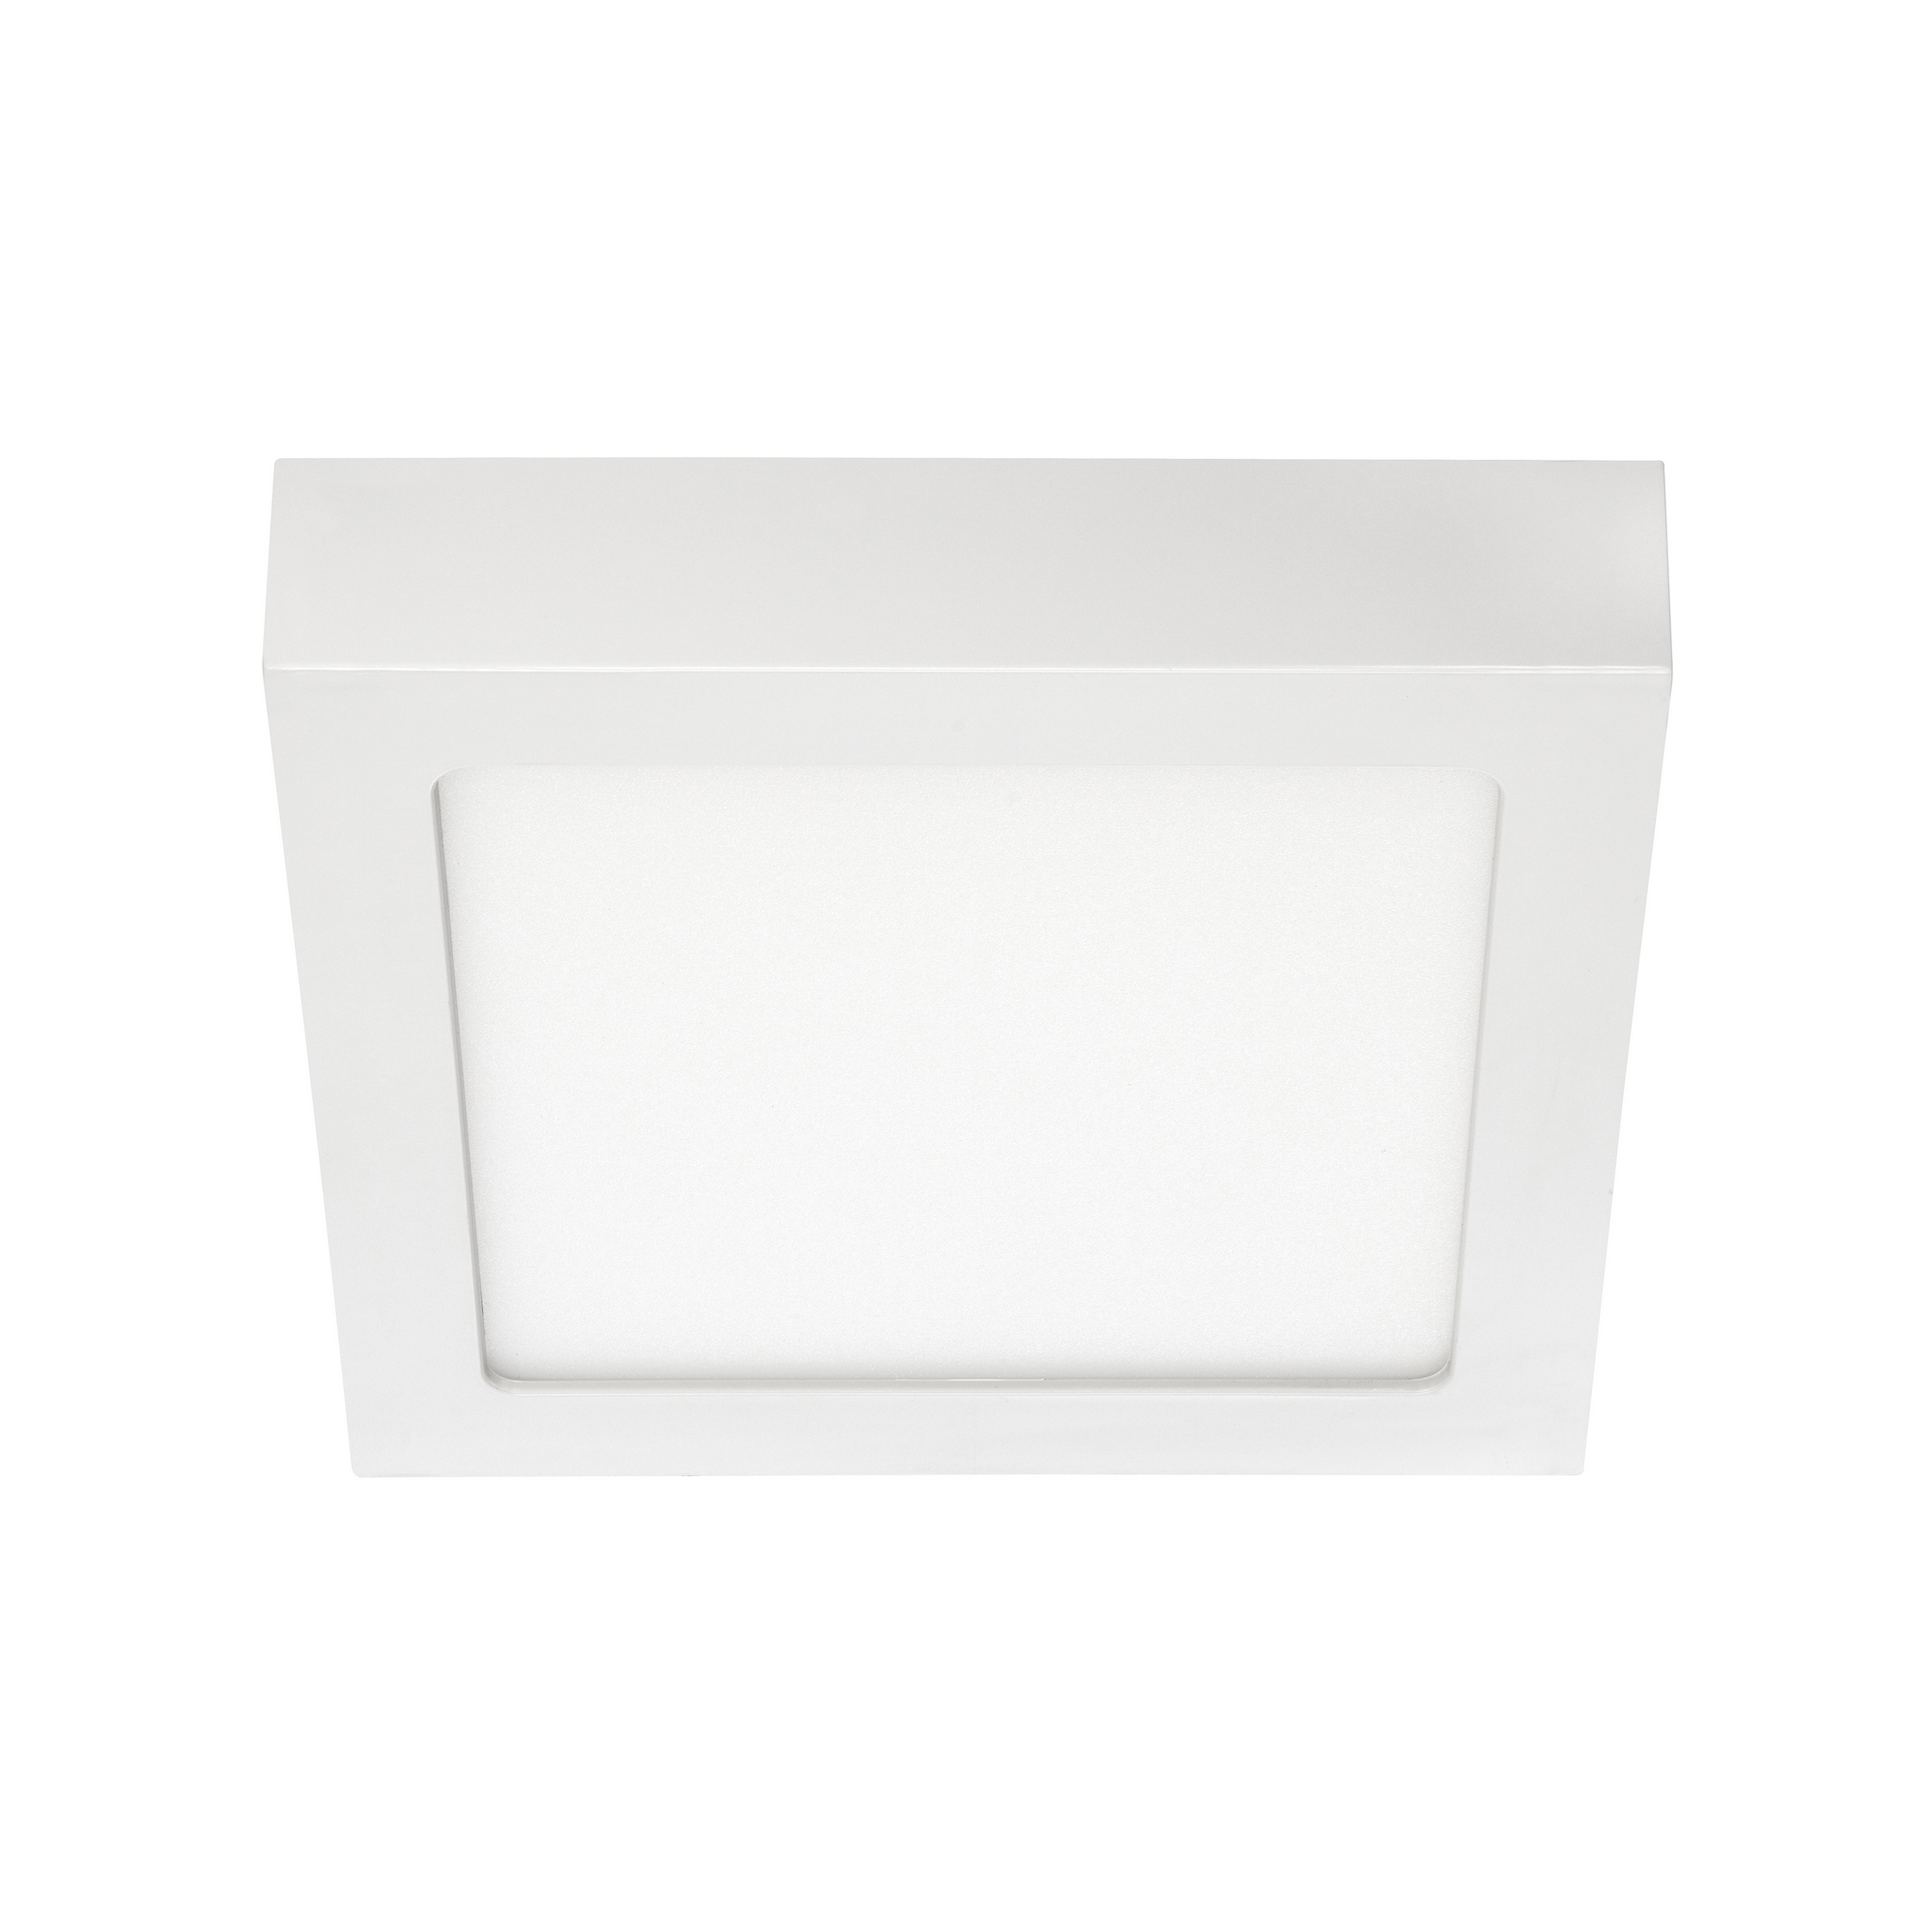 LED-Deckenleuchte 'Fire' weiß 17 x 17 x 3,2 cm 1000 lm warmweiß + product picture